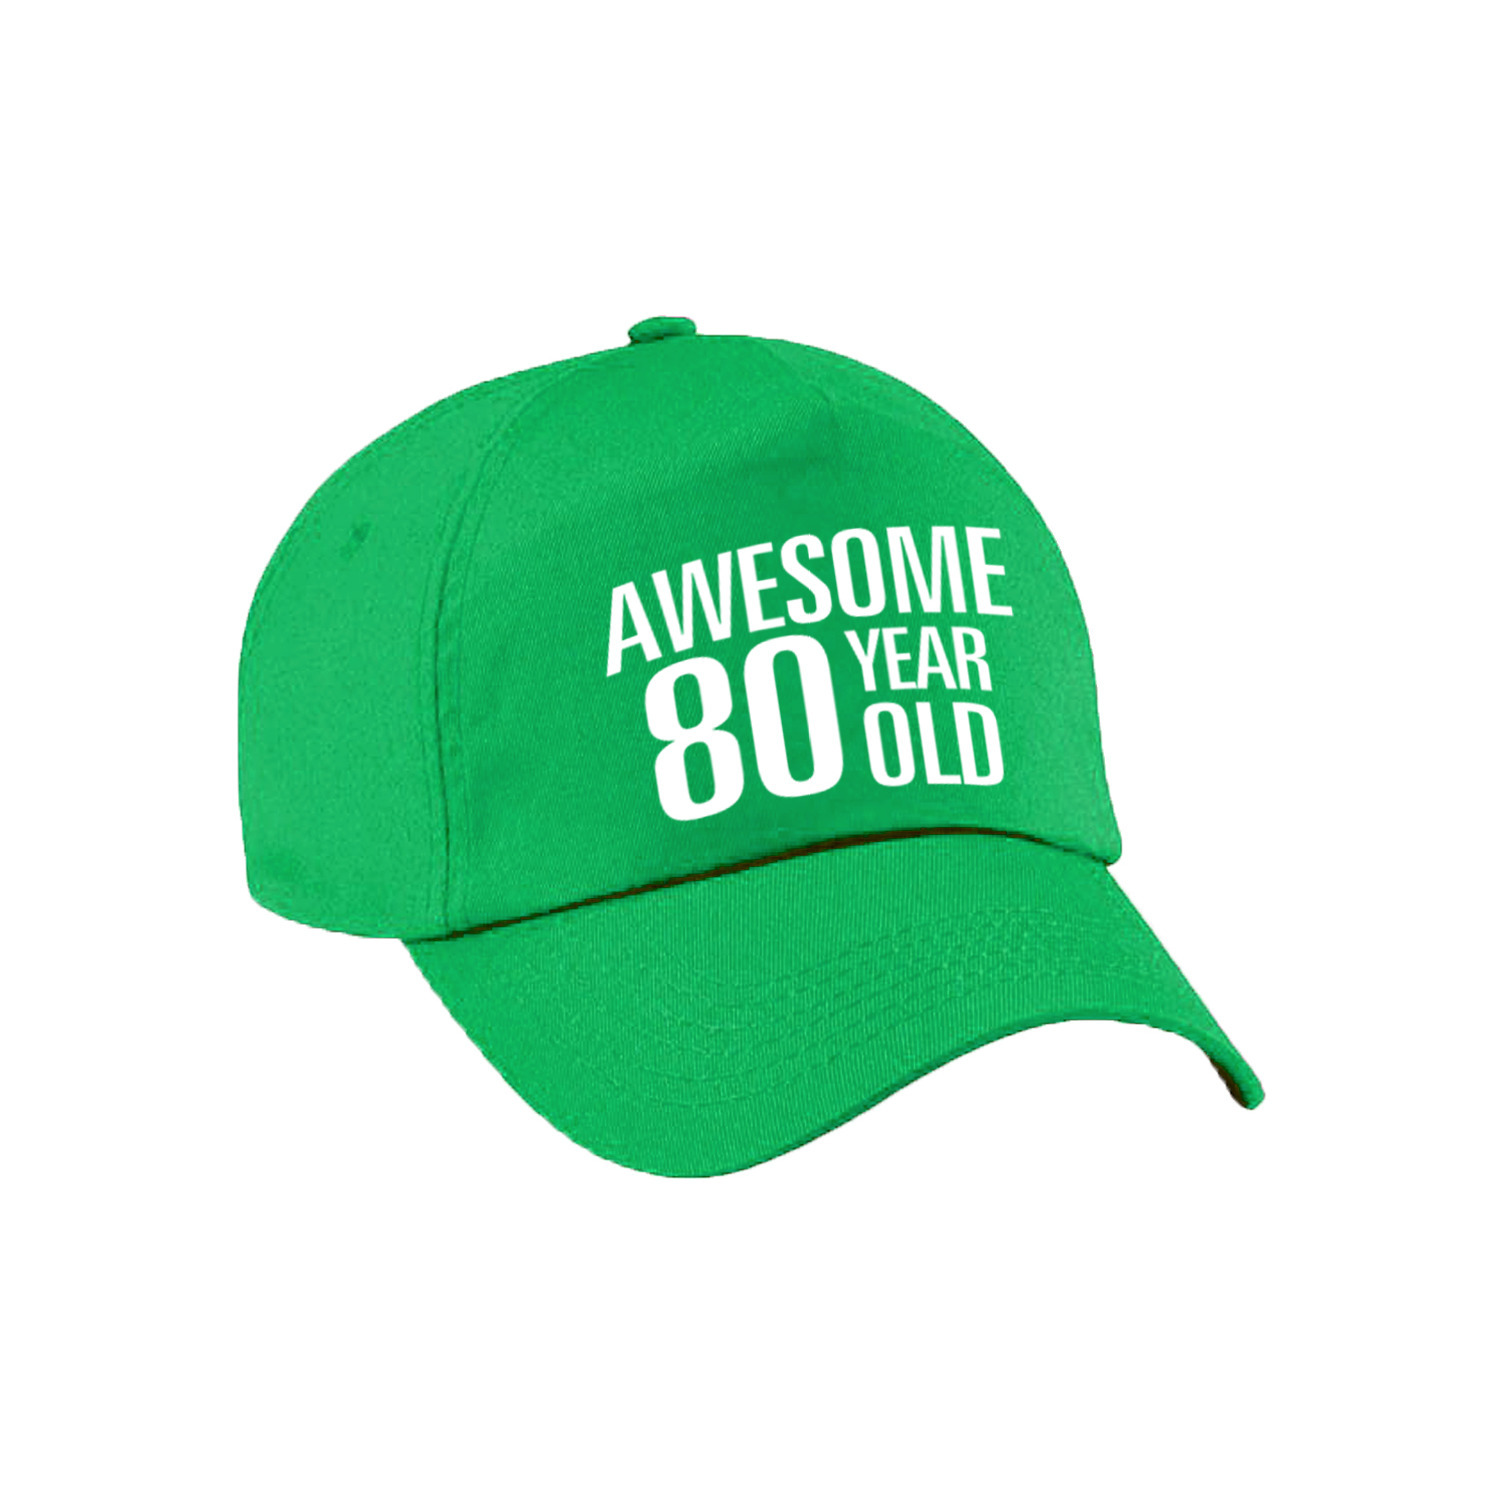 Awesome 80 year old verjaardag pet / cap groen voor dames en heren